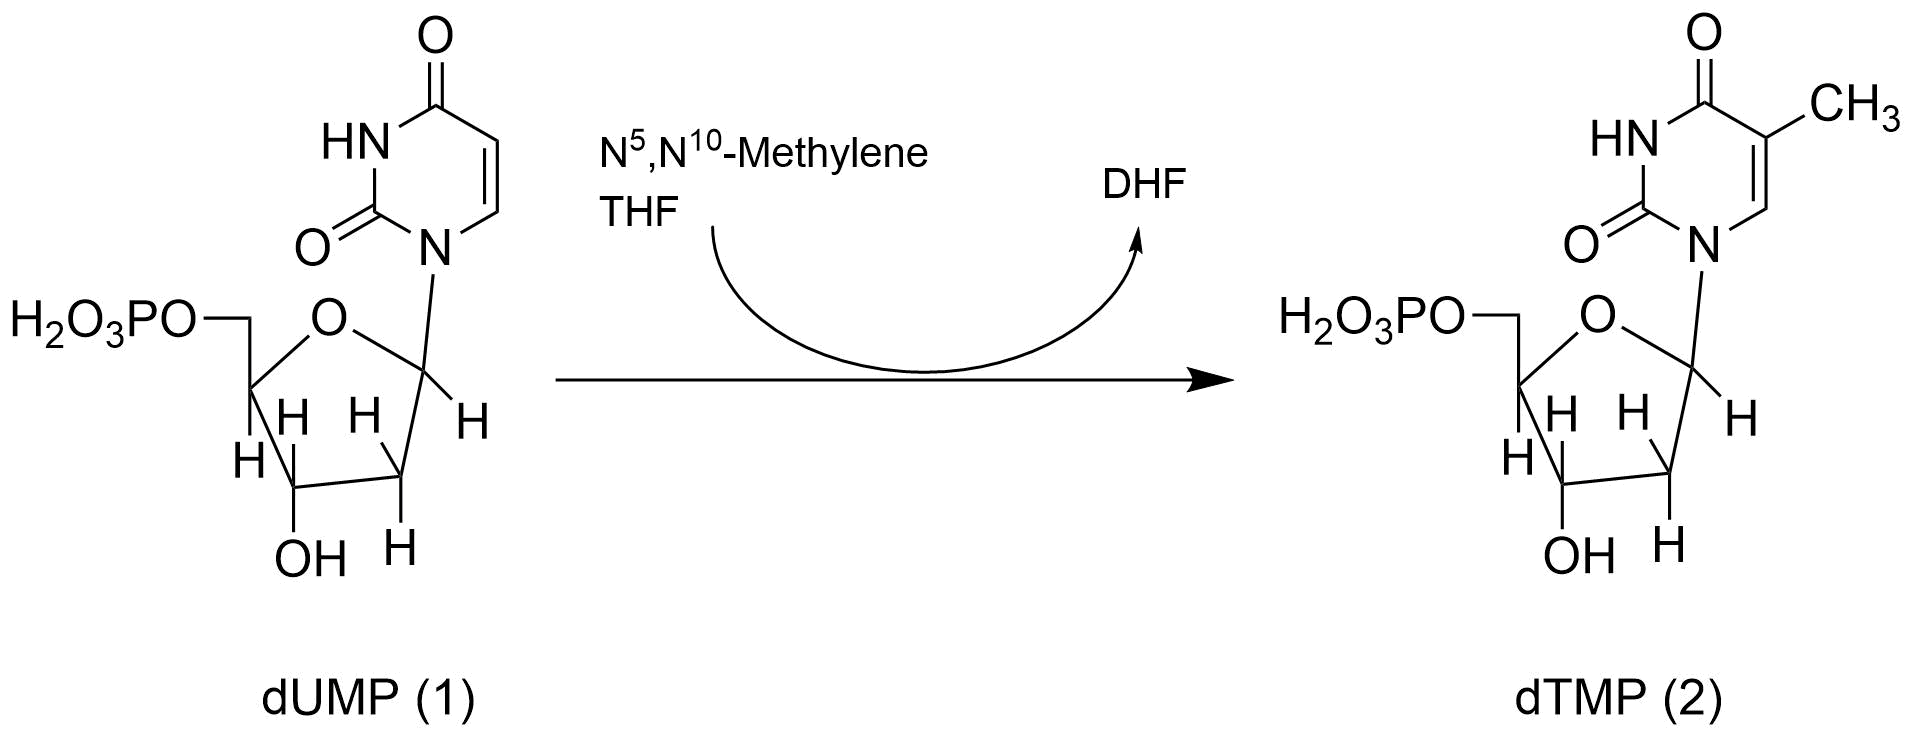 チミジル酸合成酵素の反応